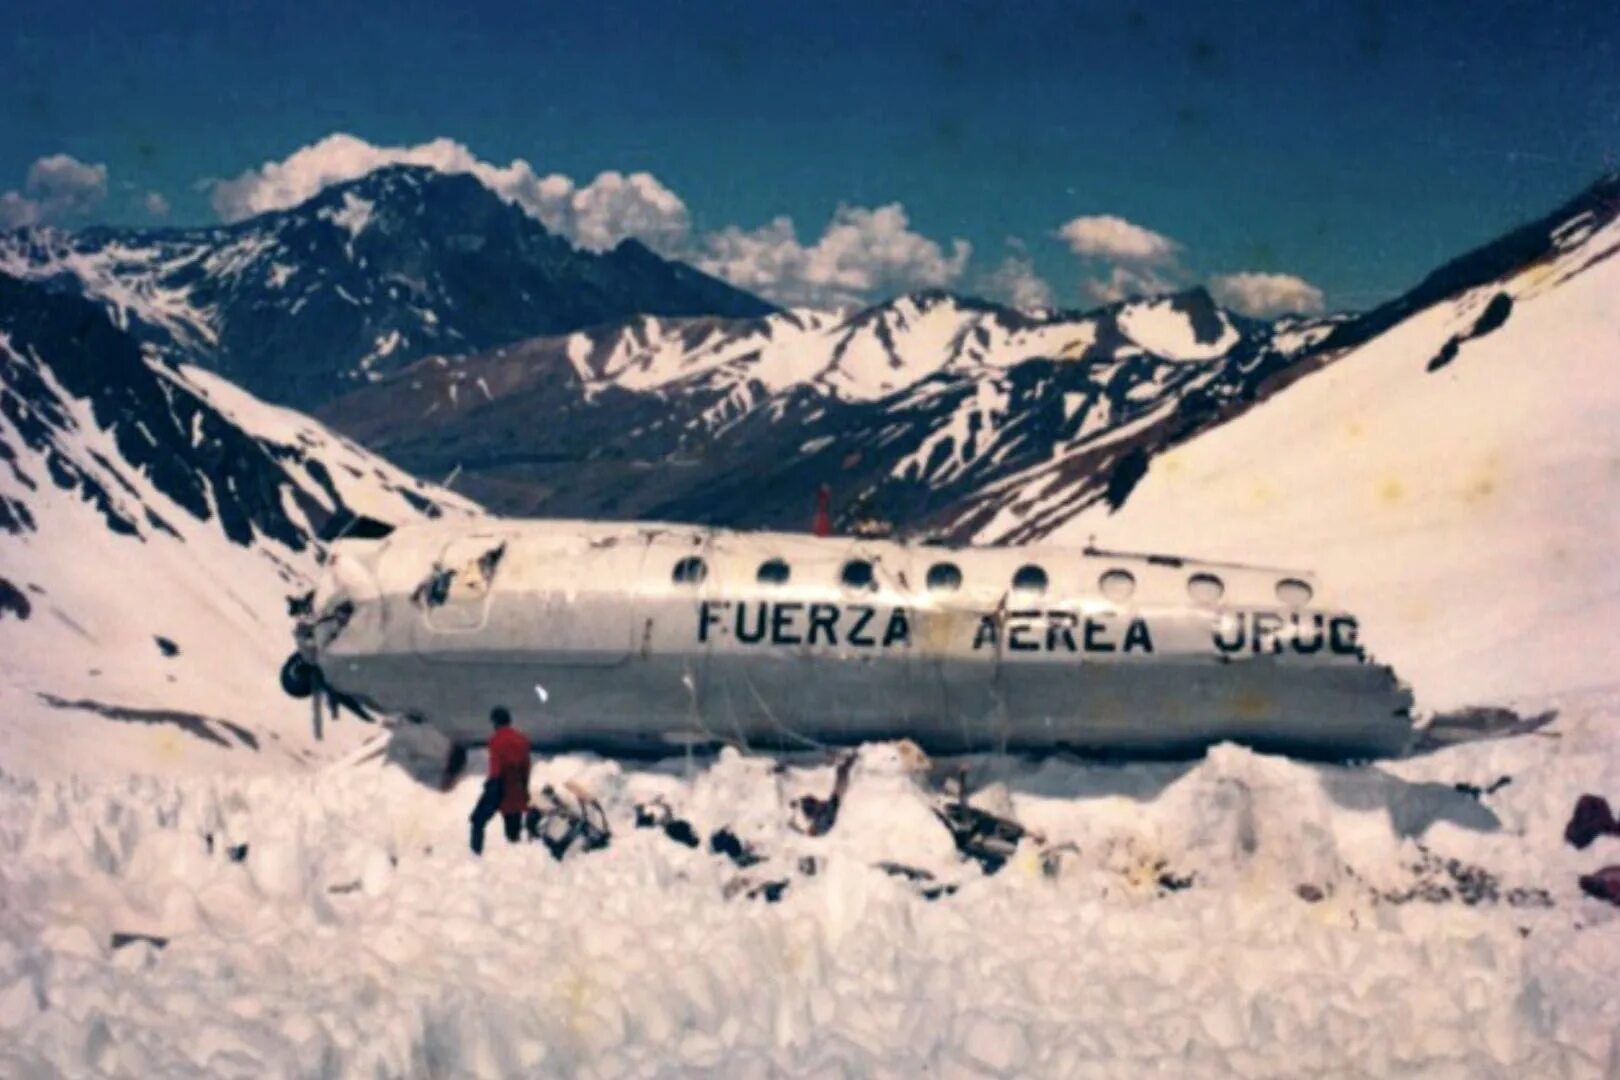 Уругвай авиакатастрофа. Самолет разбившийся в Андах в 1972. 571 Уругвайских ВВС В Андах.